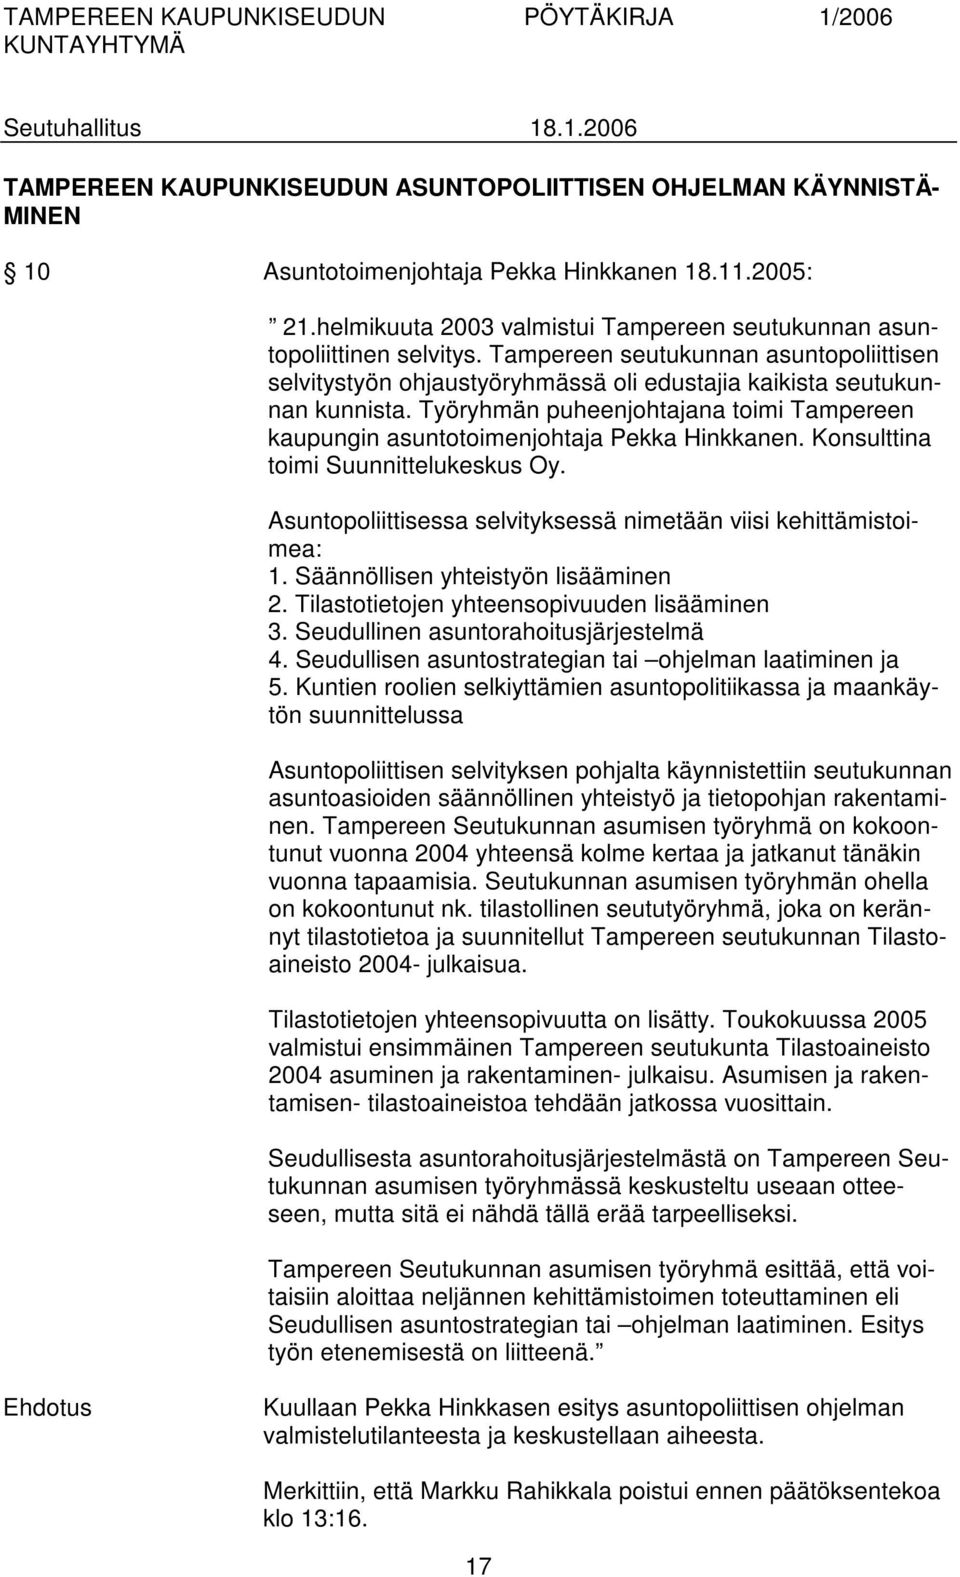 Työryhmän puheenjohtajana toimi Tampereen kaupungin asuntotoimenjohtaja Pekka Hinkkanen. Konsulttina toimi Suunnittelukeskus Oy. Asuntopoliittisessa selvityksessä nimetään viisi kehittämistoimea: 1.